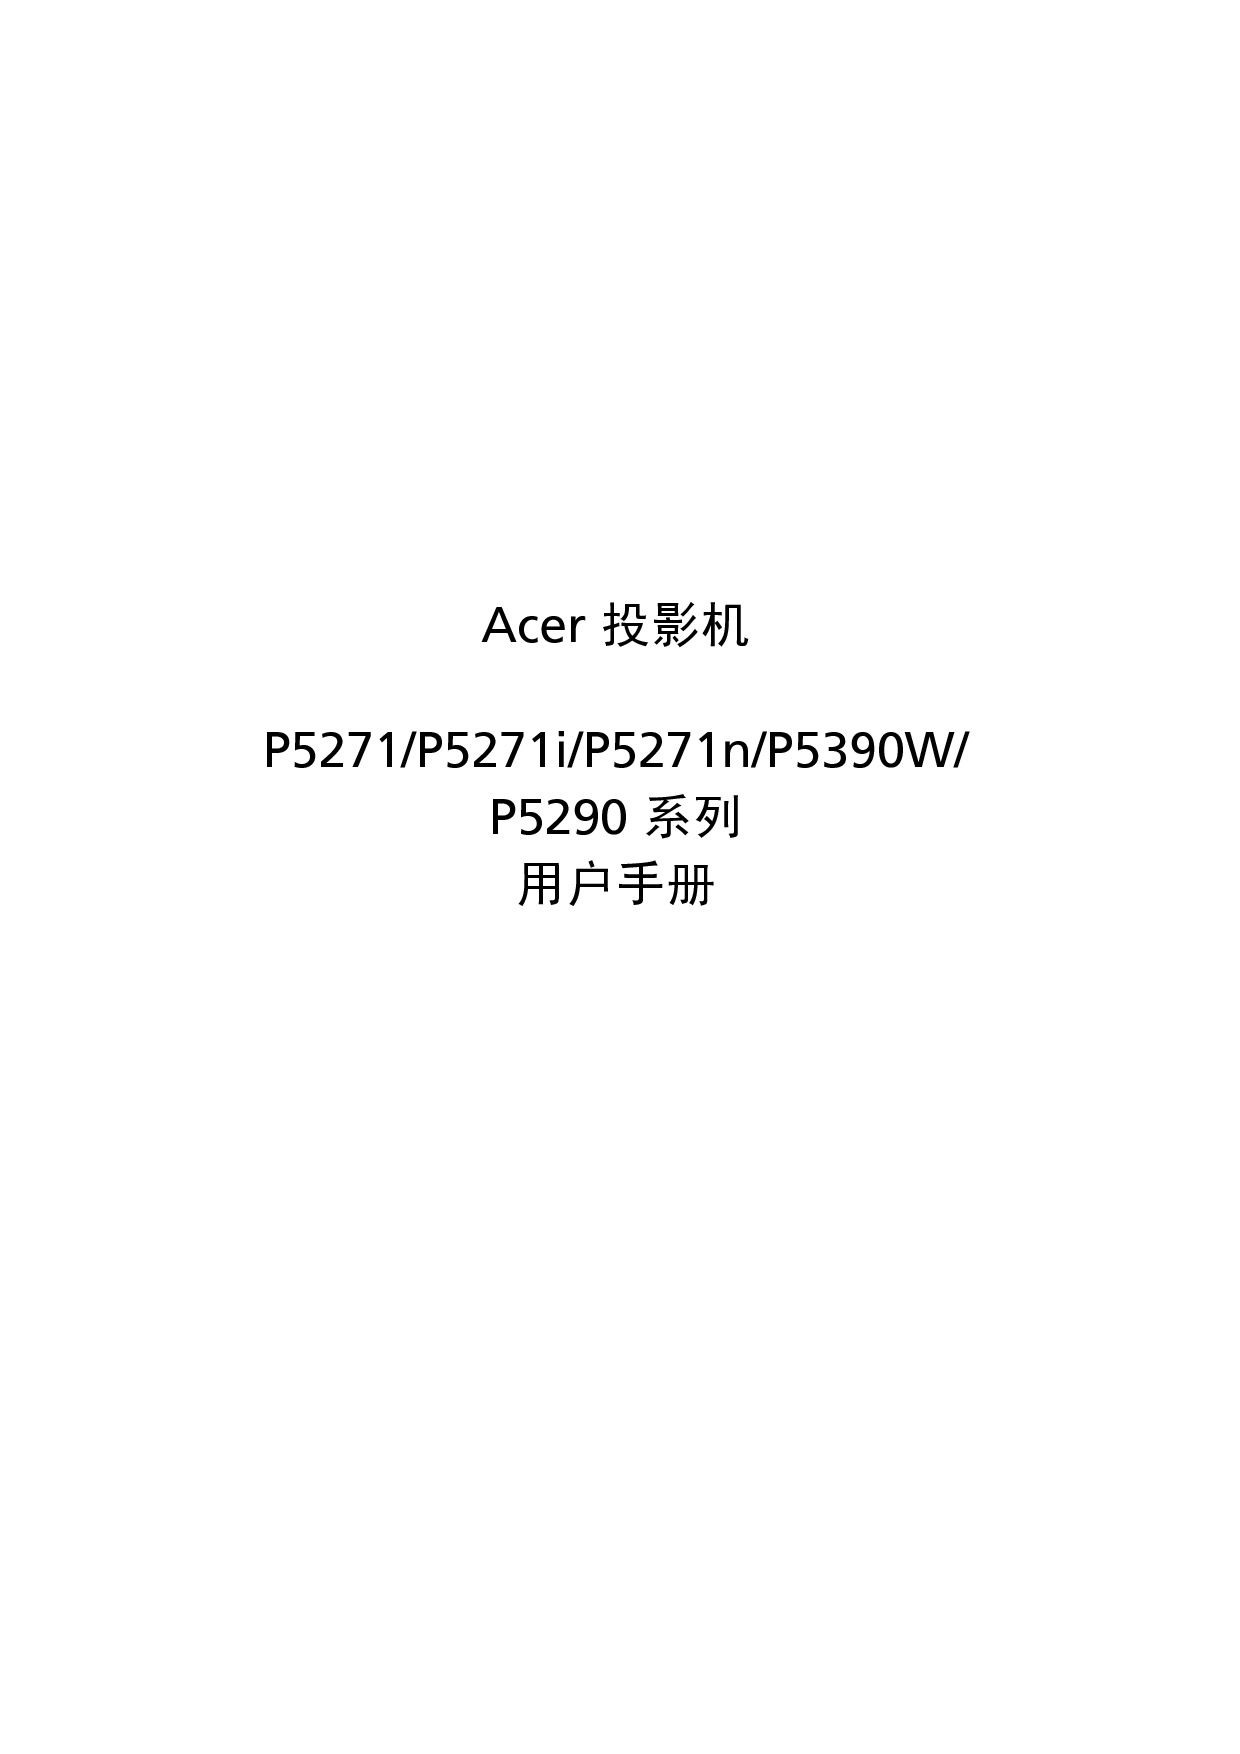 宏基 Acer P5271, P5290 用户指南 封面